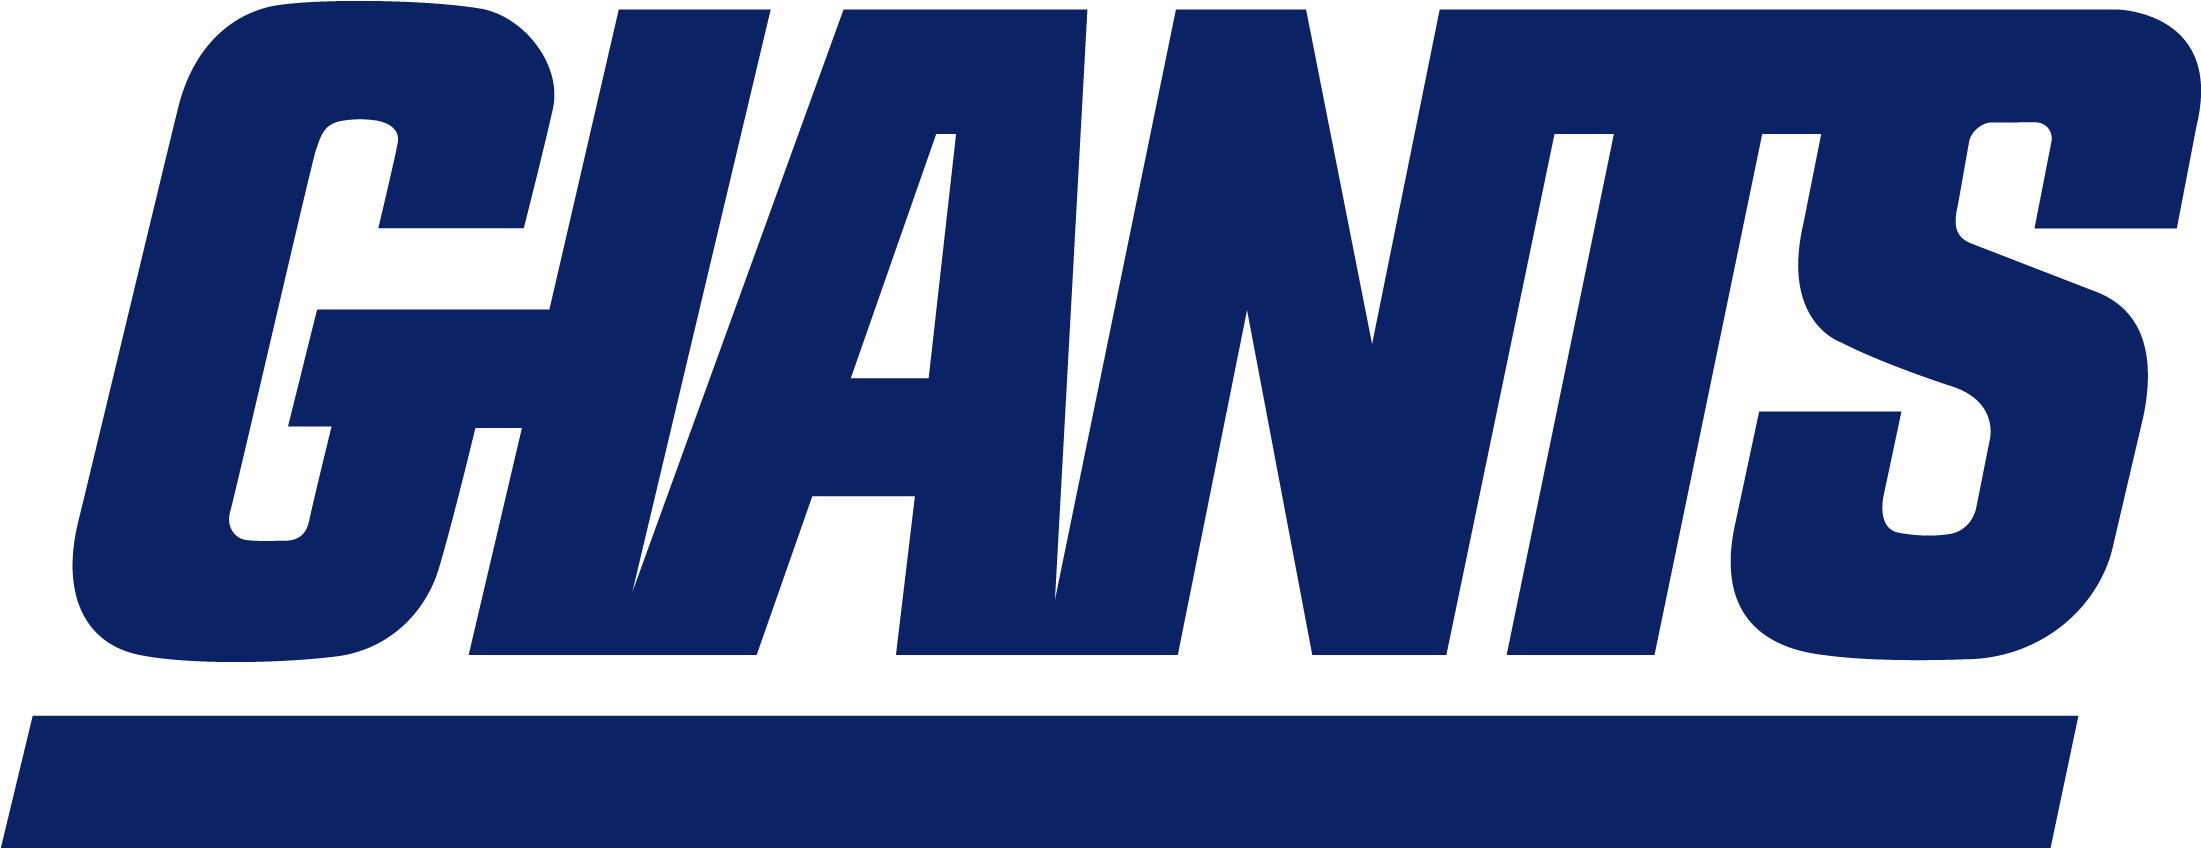 New York Giants Logo Font - New York Giants Logo (2400x1100)